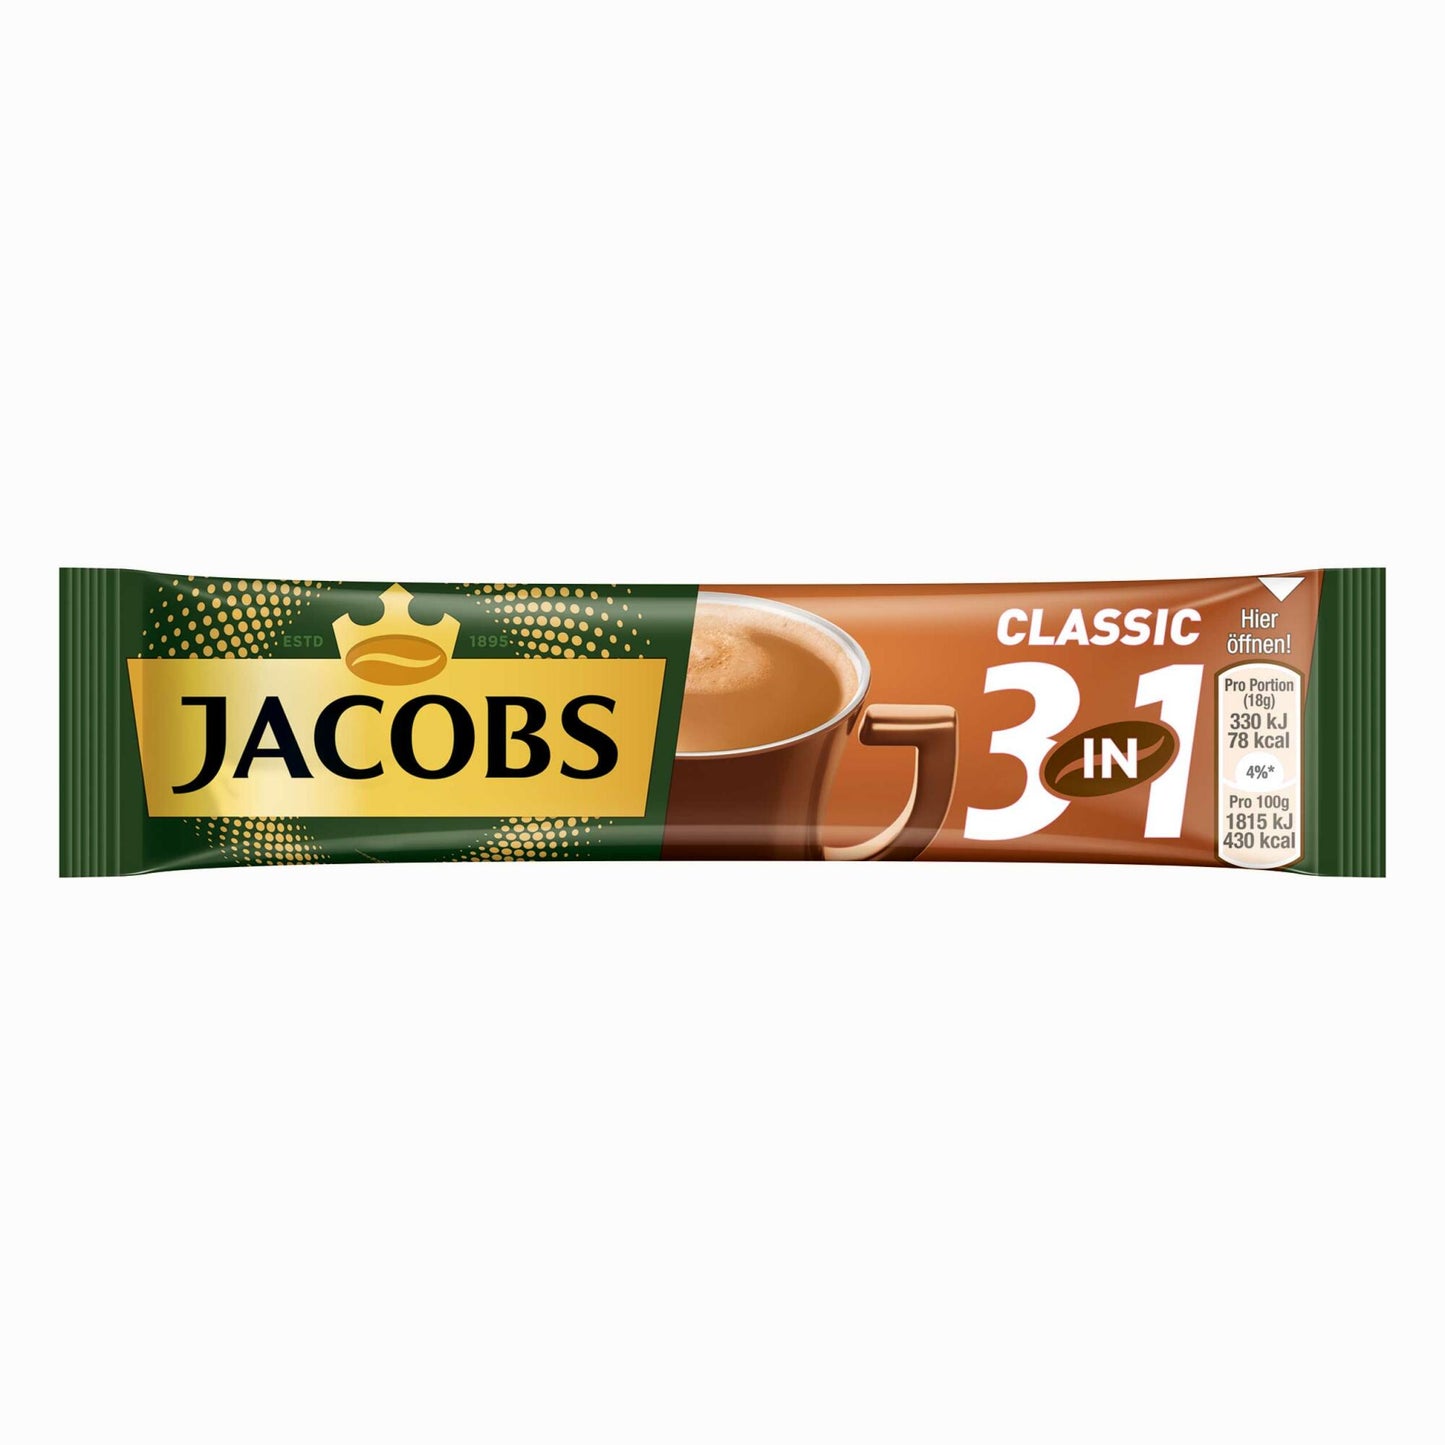 Jacobs 3in1 löslicher Kaffee, Instantkaffee, 10 Becherportionen